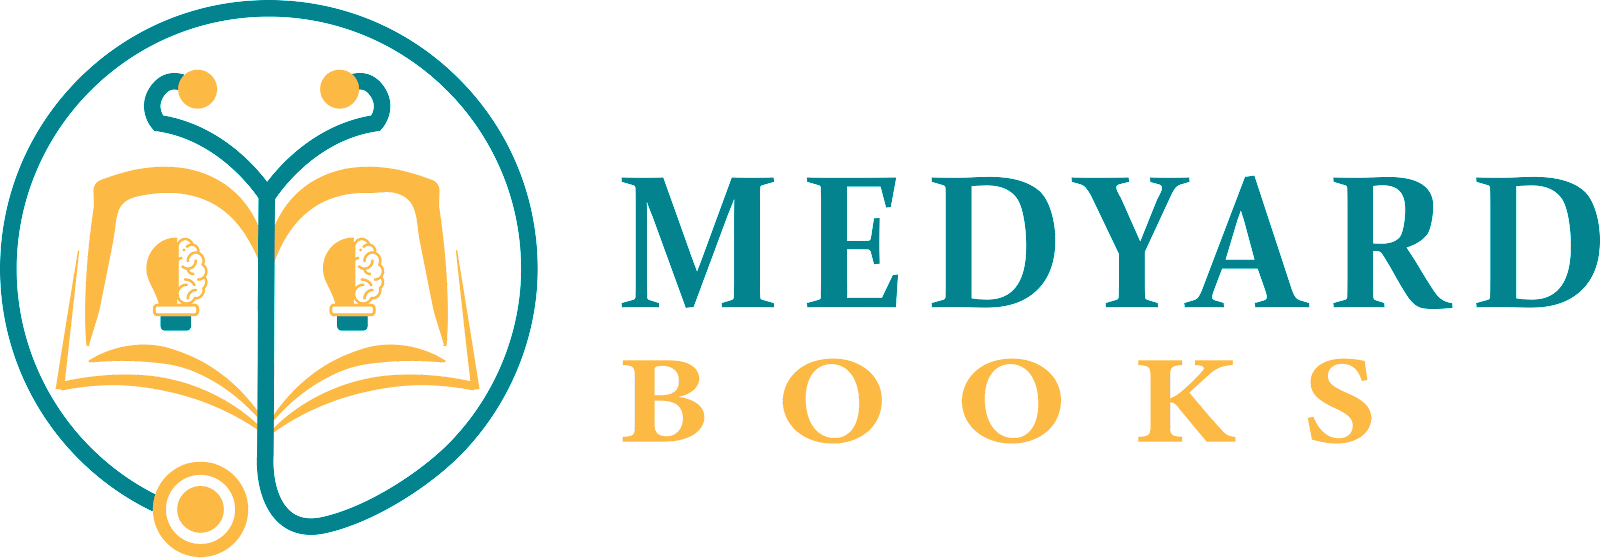 ميد يارد للكتب الطبية | Med Yard Books